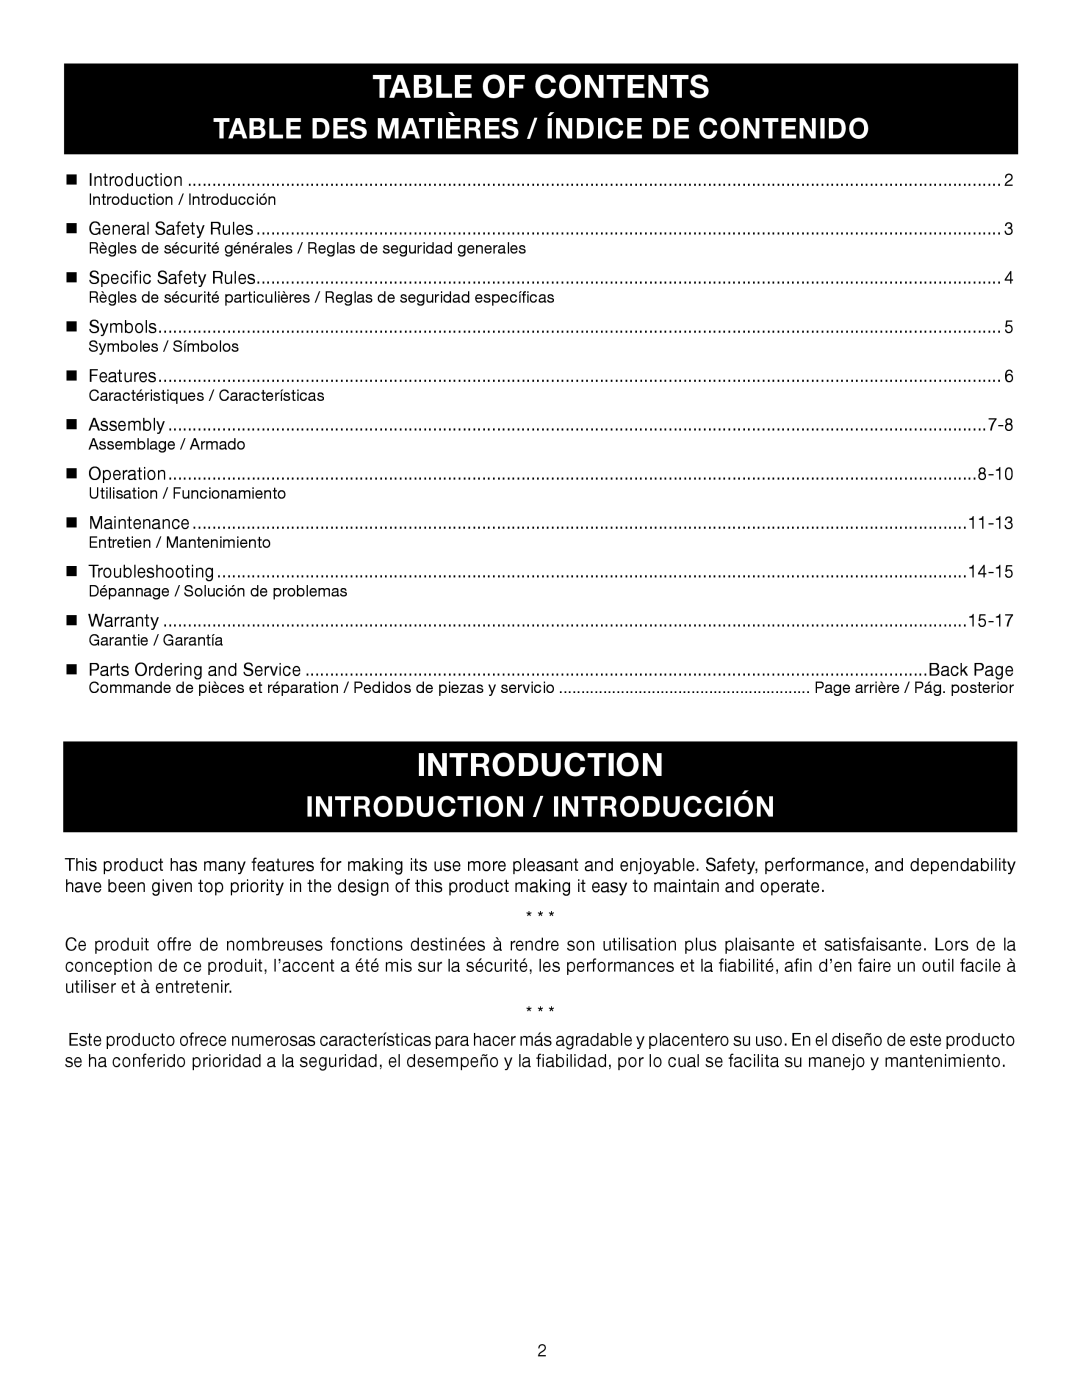 Ryobi C430 RY34421 Table Of Contents, Table Des Matières / Índice De Contenido, Introduction / Introducción 